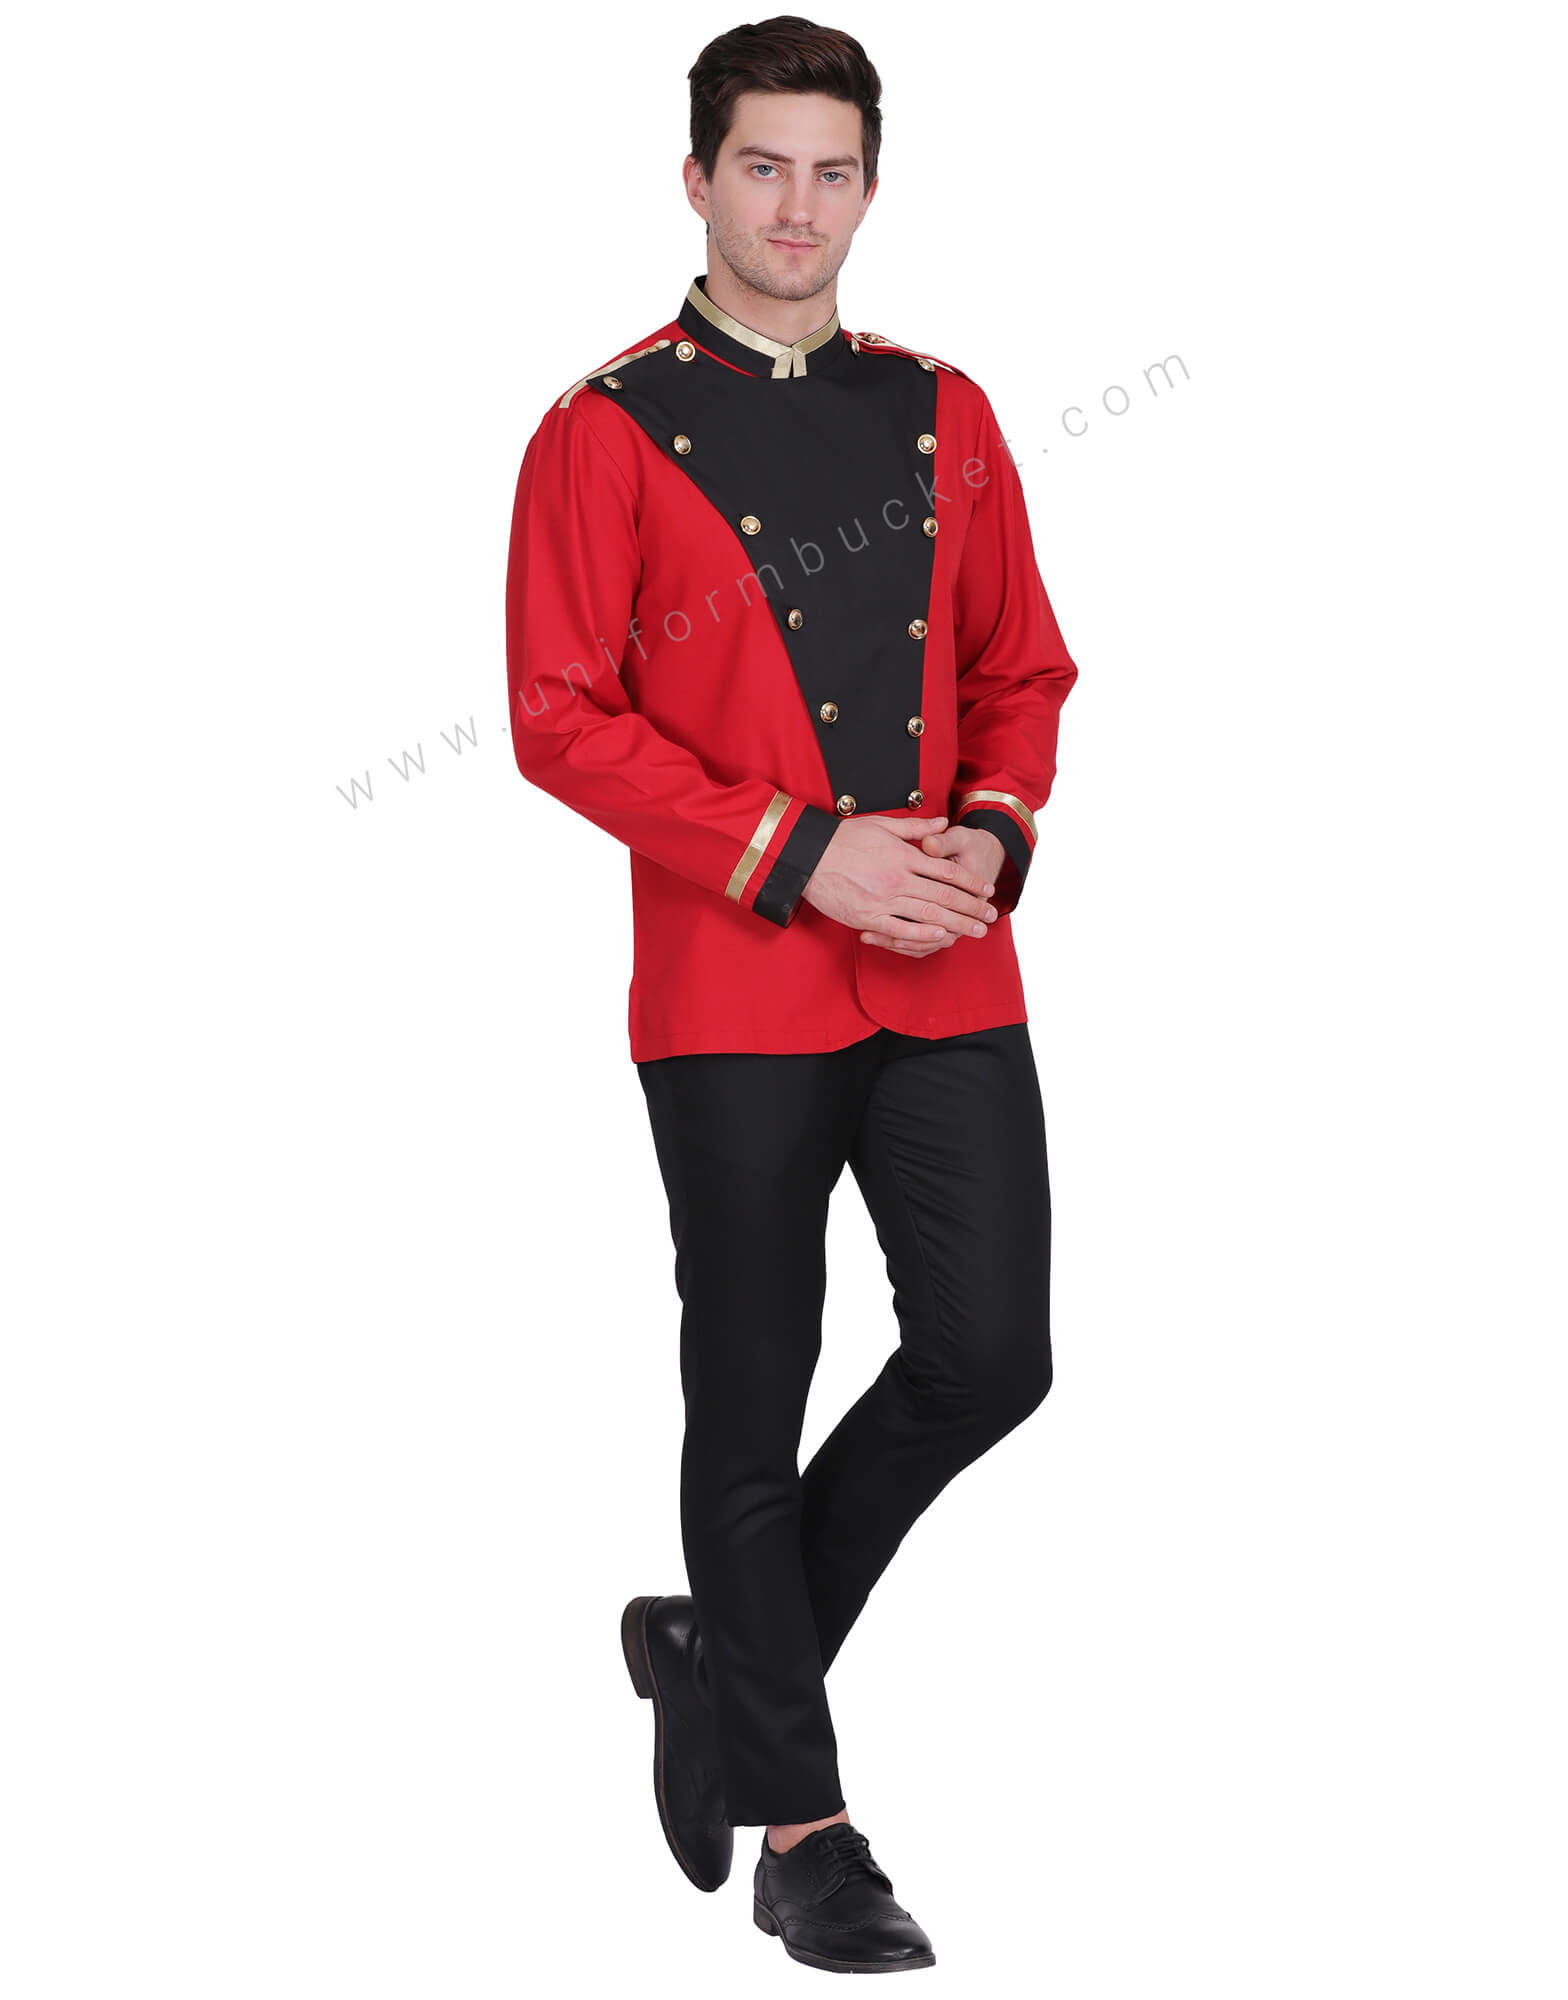 Buy bell boy uniform with golden button men Online @ Best Prices in ...